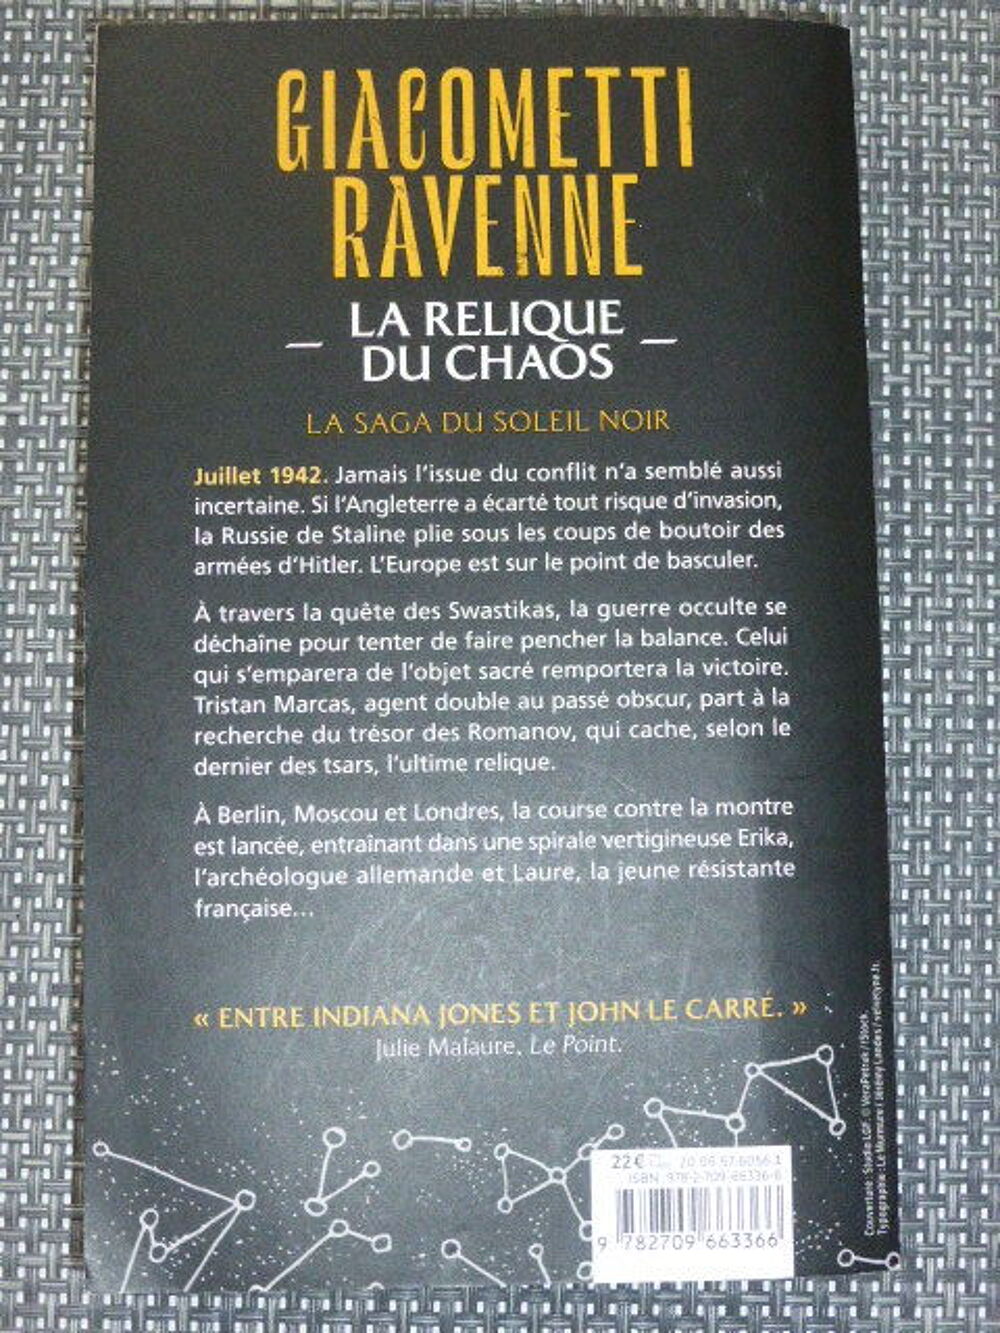 La relique du chaos Giacometti Ravenne Livres et BD